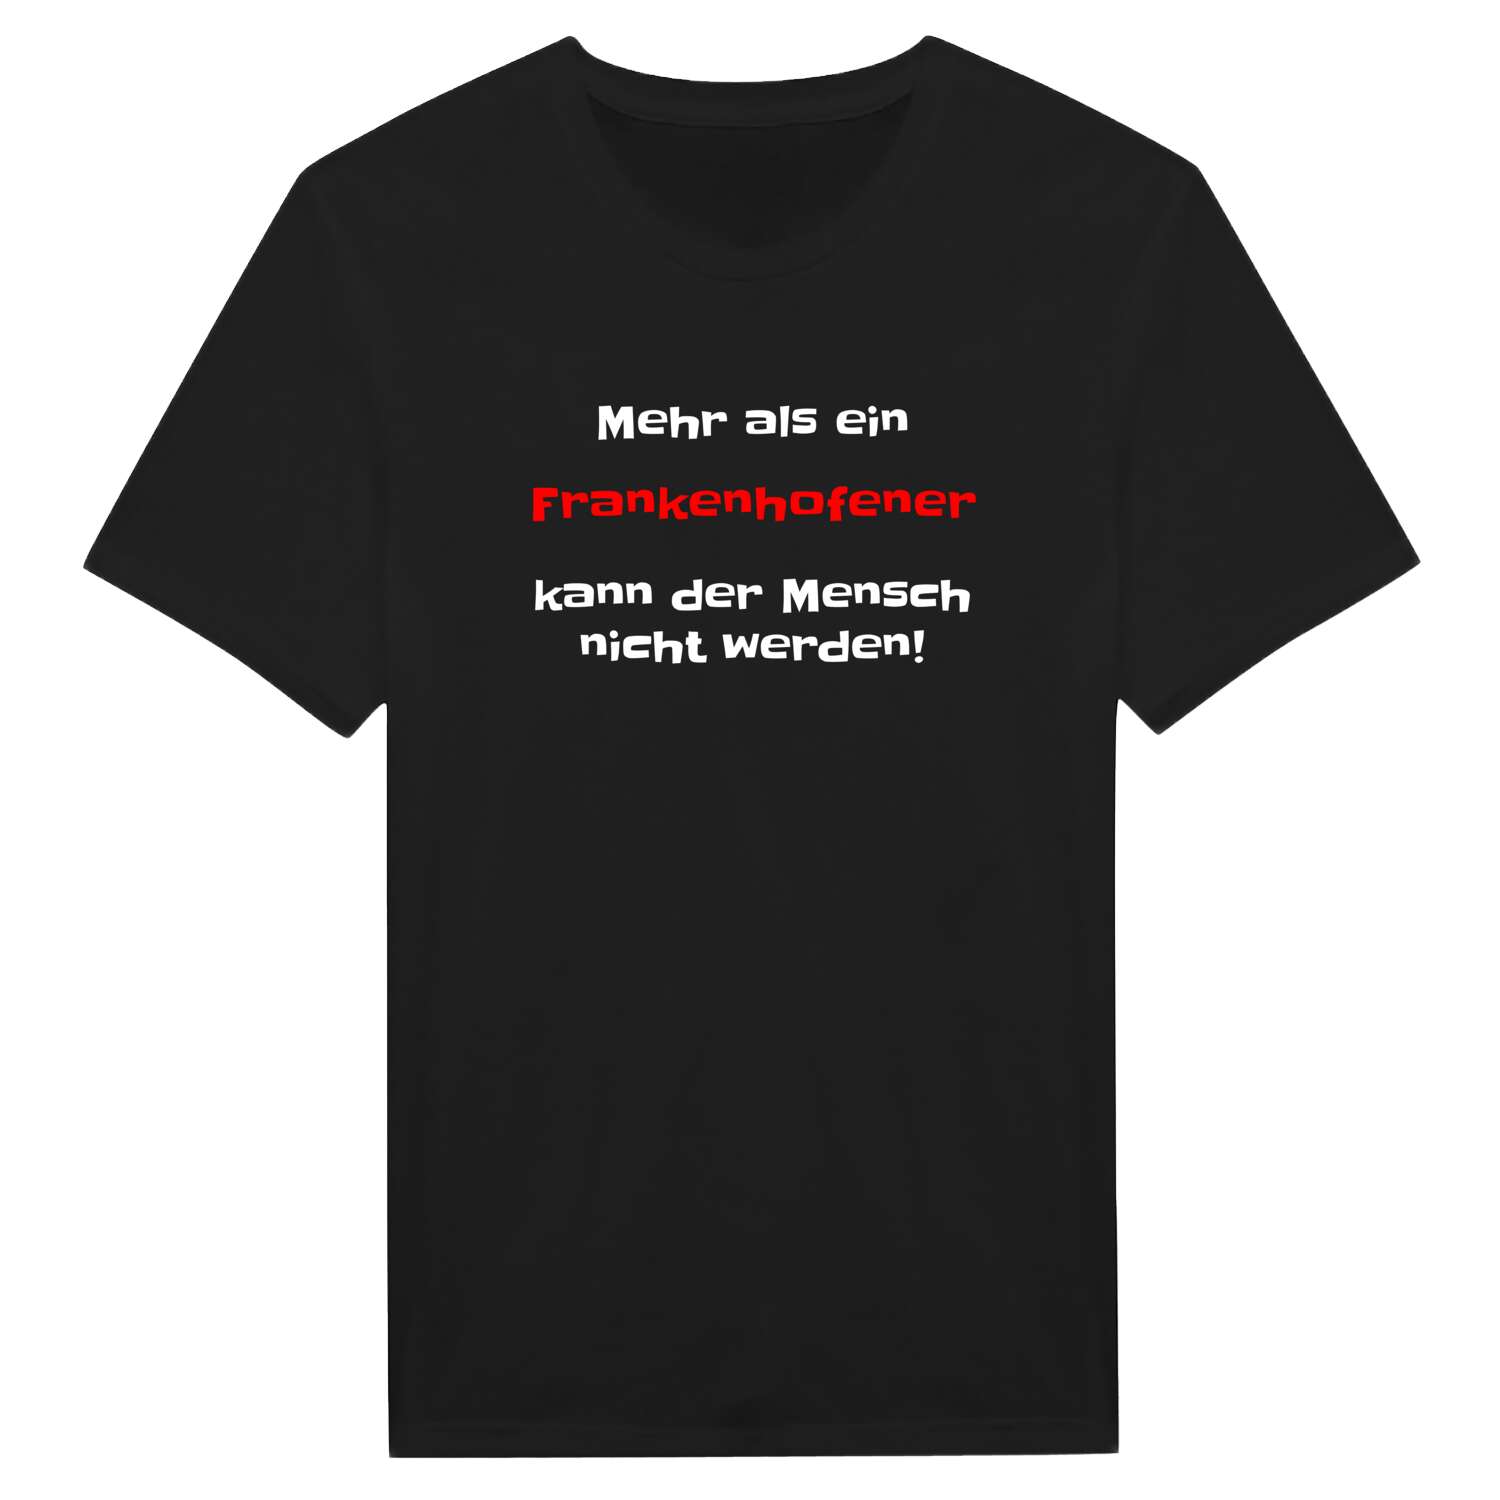 Frankenhofen T-Shirt »Mehr als ein«